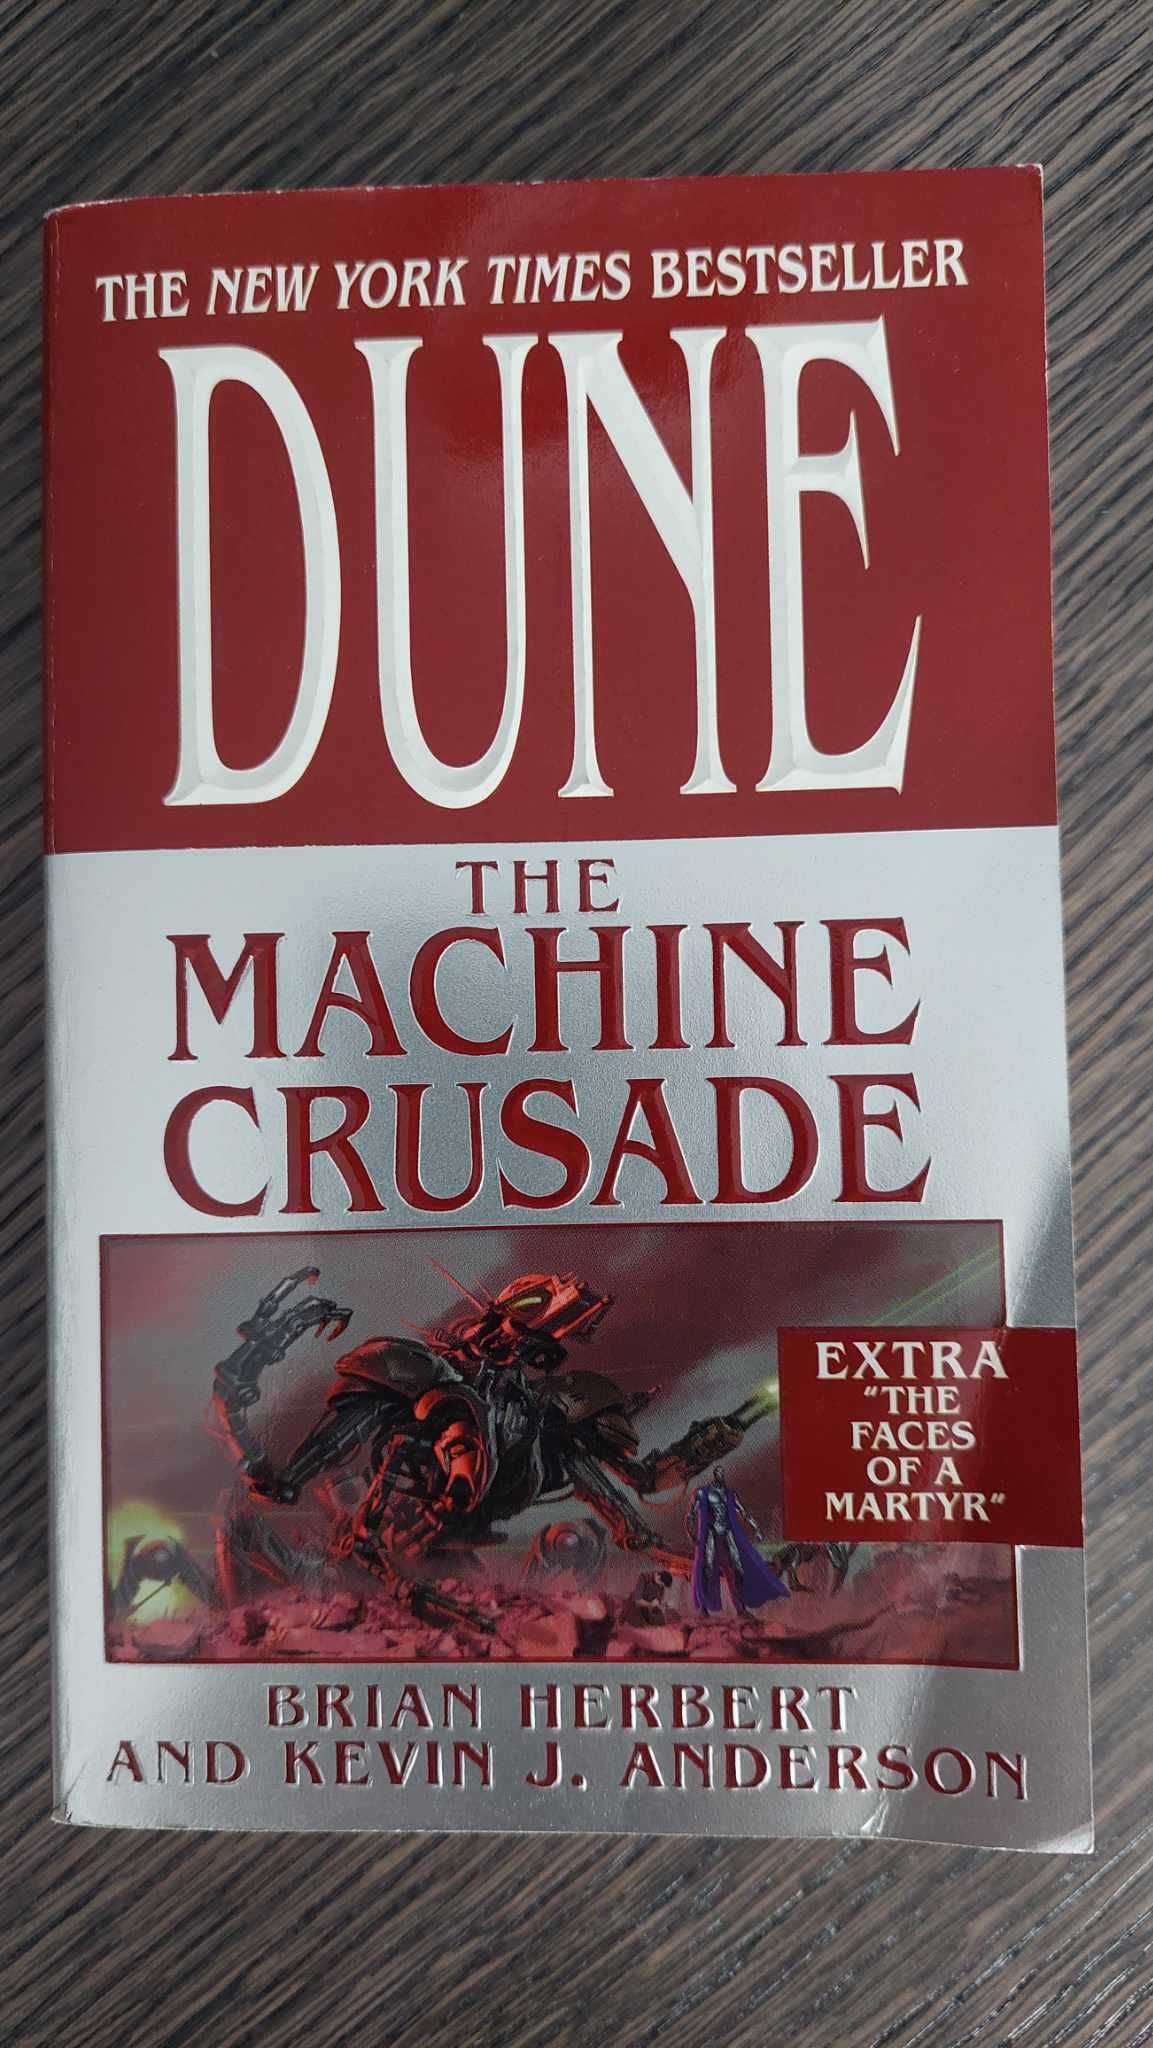 Brian Herbert, Kevin J. Anderson: "Dune: The Machine Crusade"